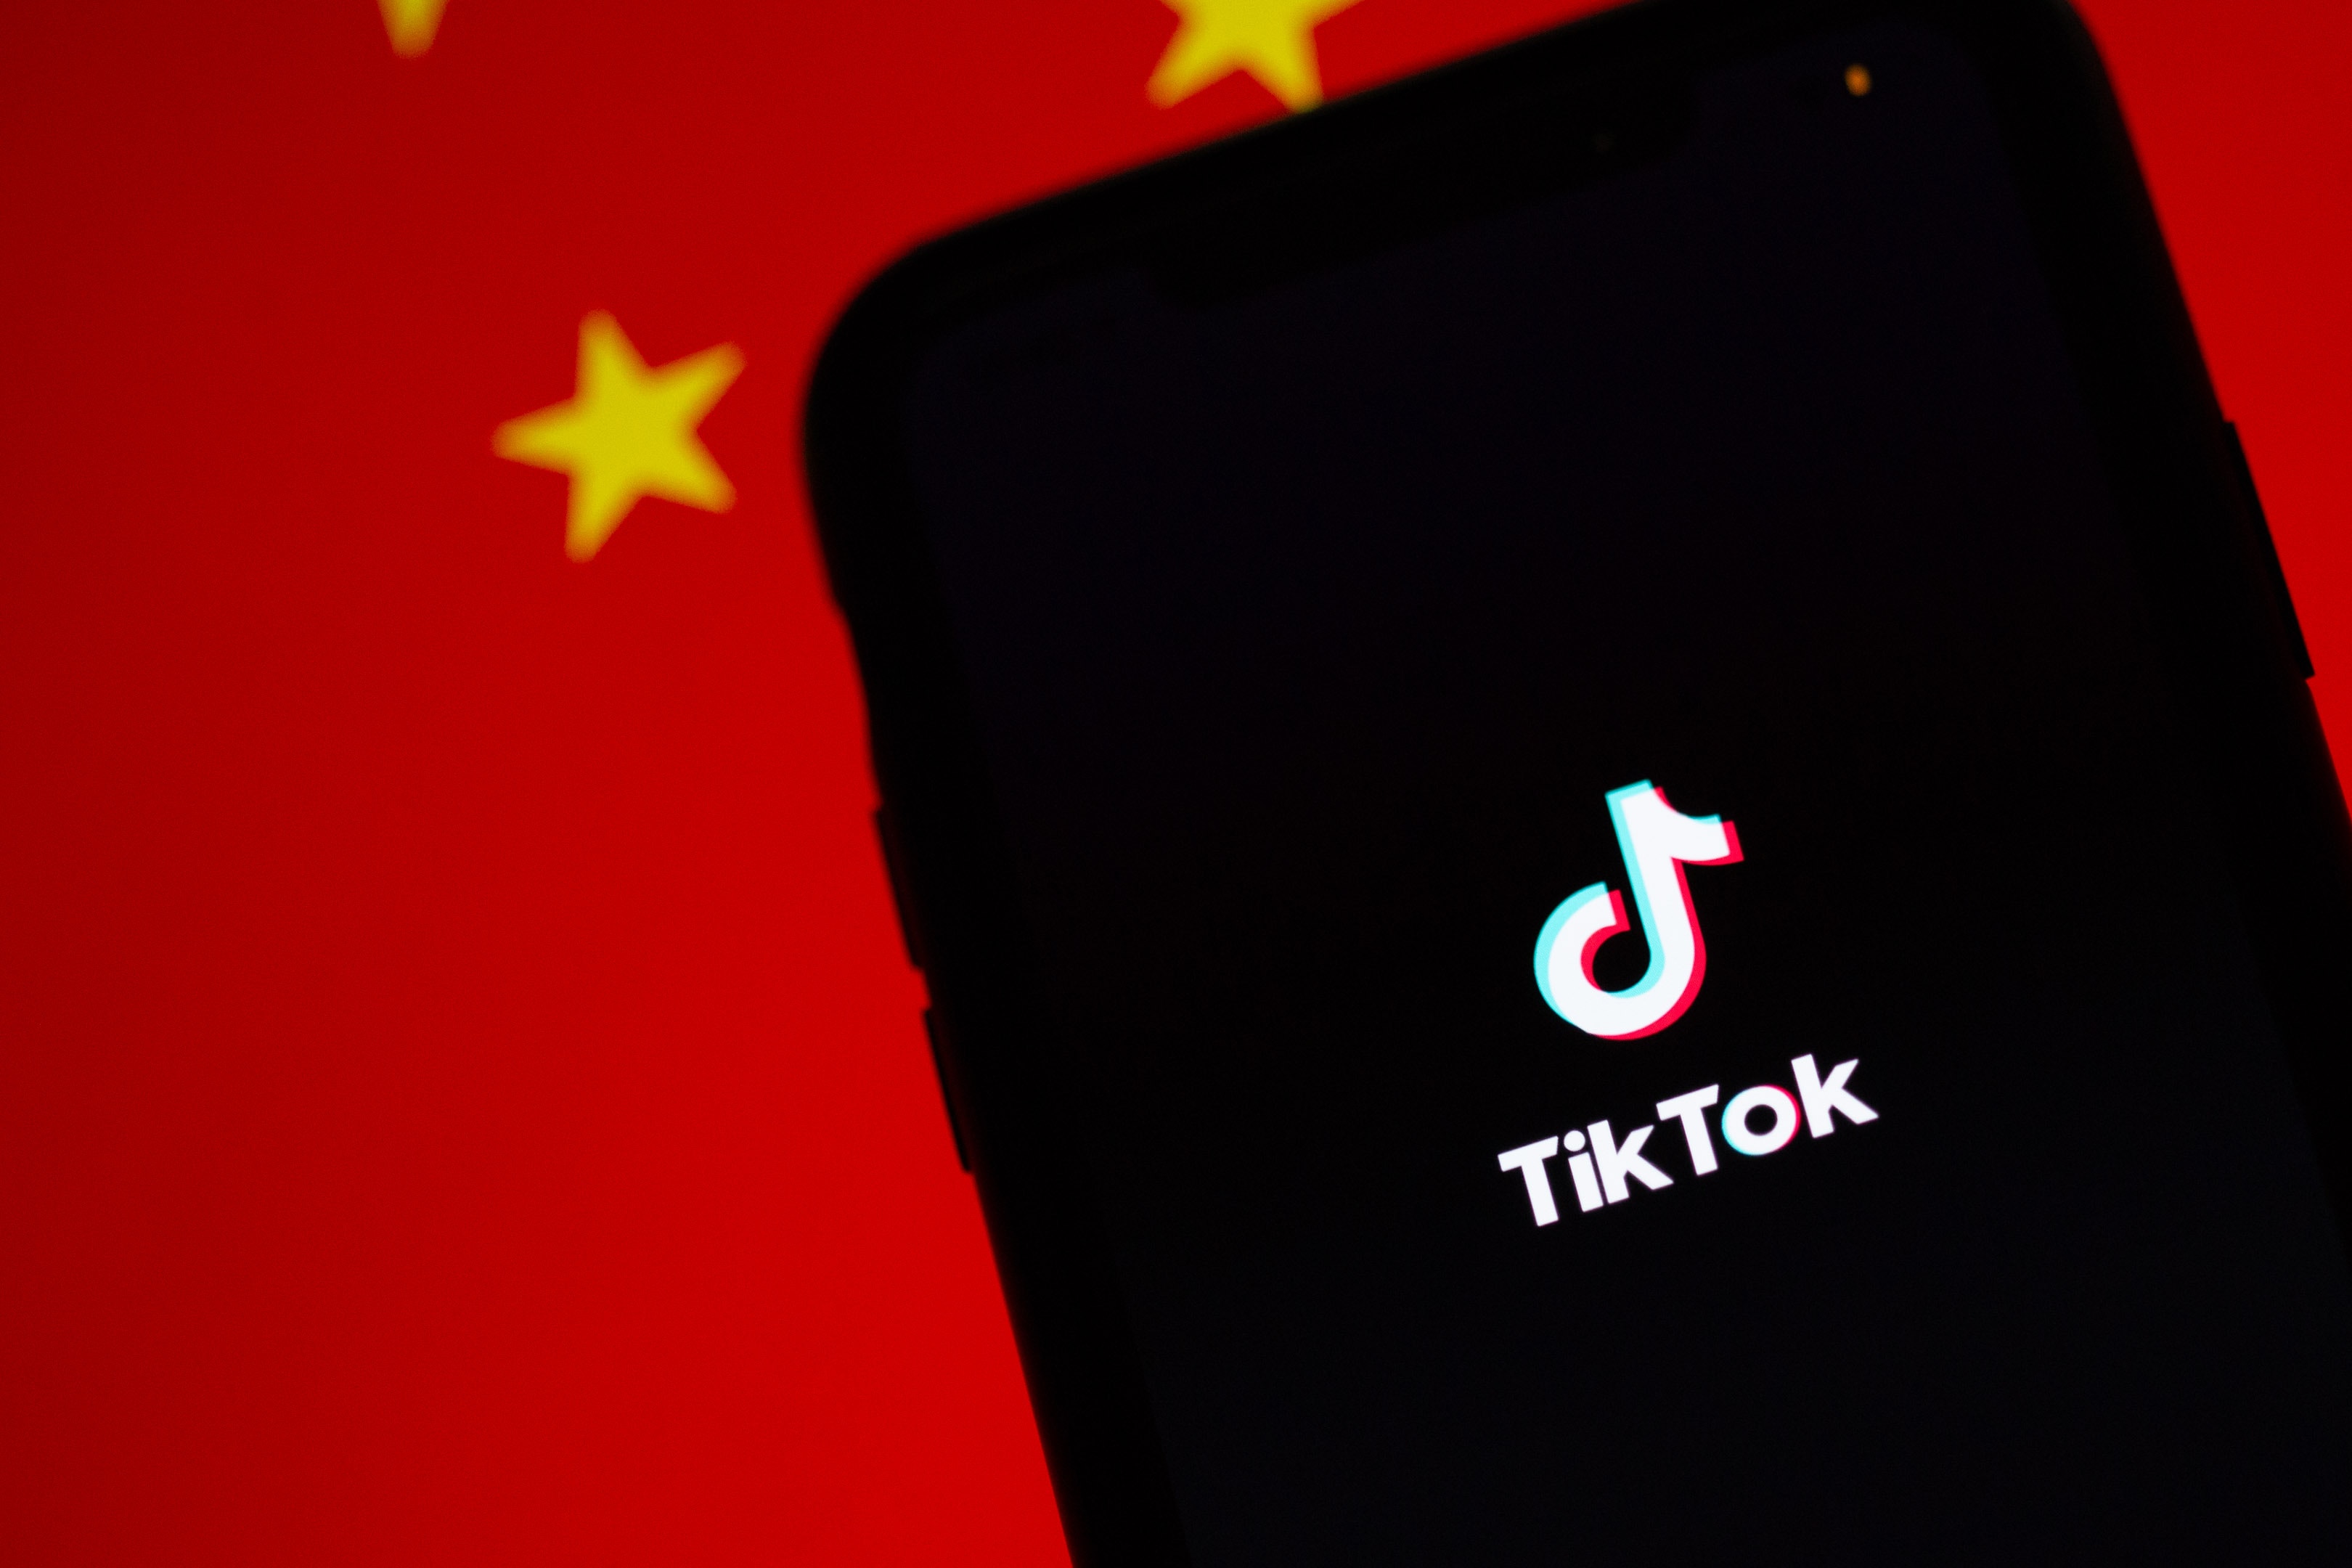 TikTok développerait un clone de son algorithme de recommandation pour satisfaire les États-Unis